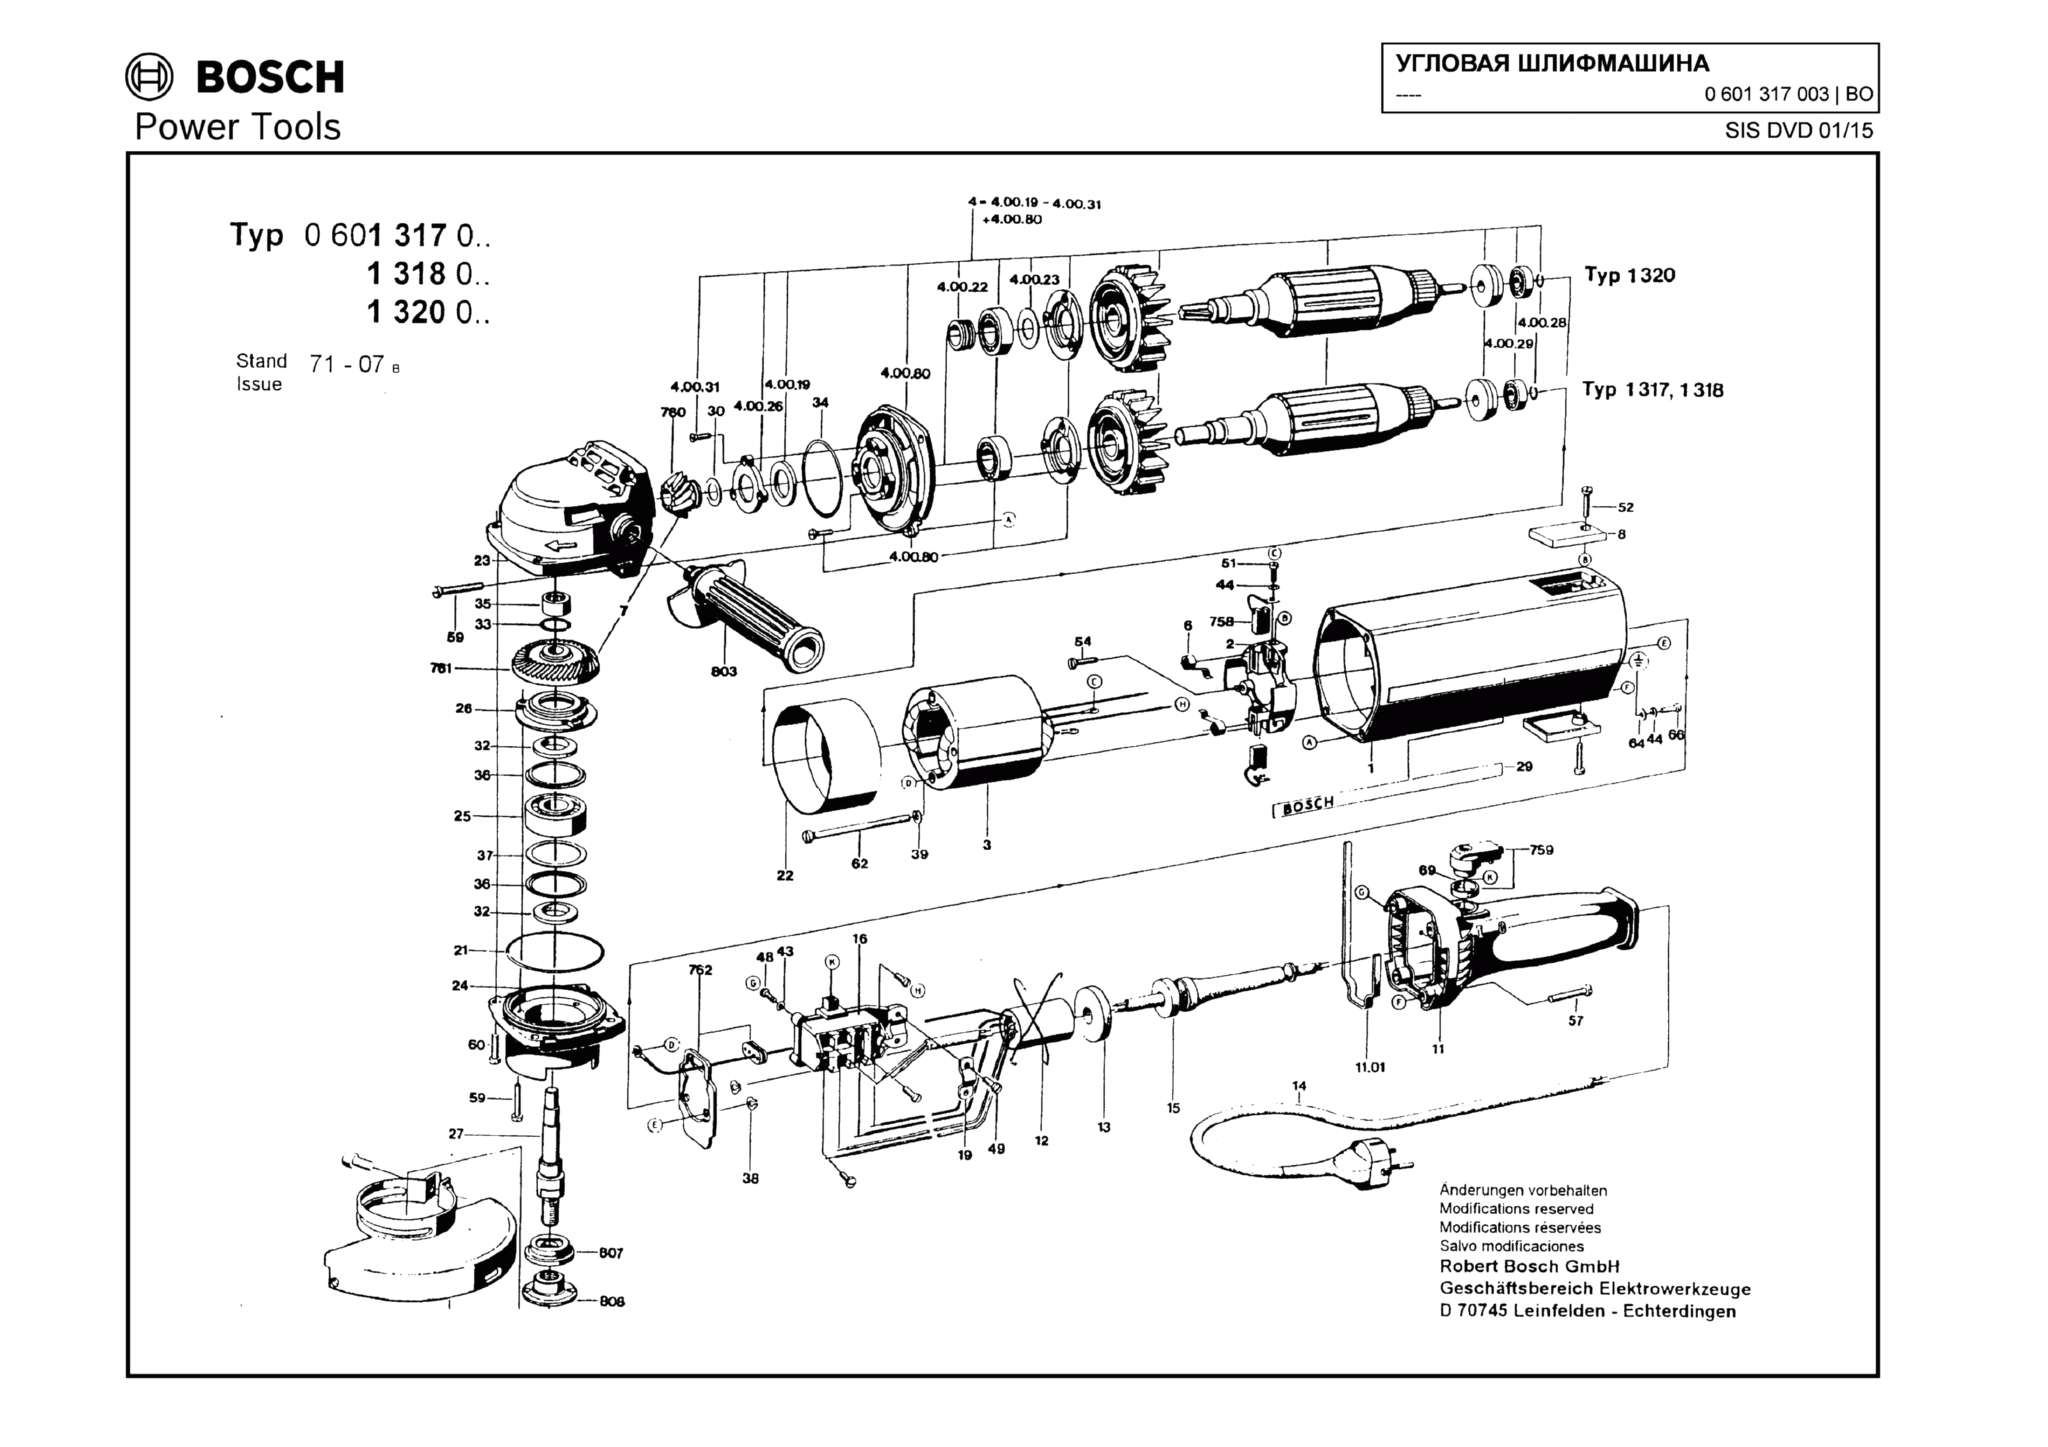 Запчасти, схема и деталировка Bosch (ТИП 0601317003)